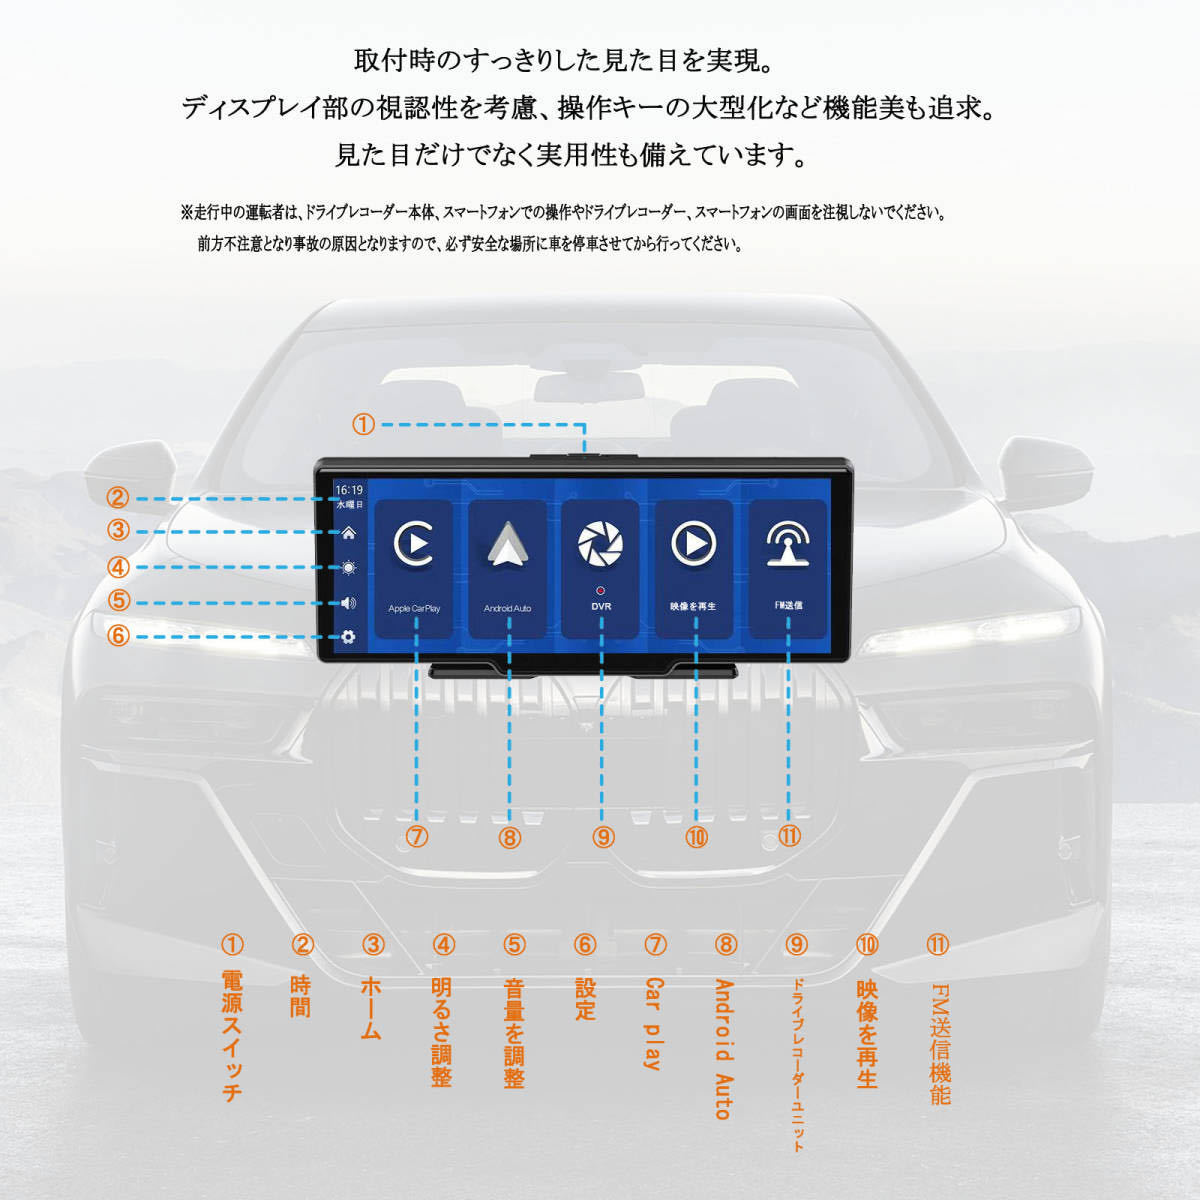 10.26インチ大画面CarPlay /Android Auto対応 フロント車載モニター ミラーリング機能 動画再生_画像7